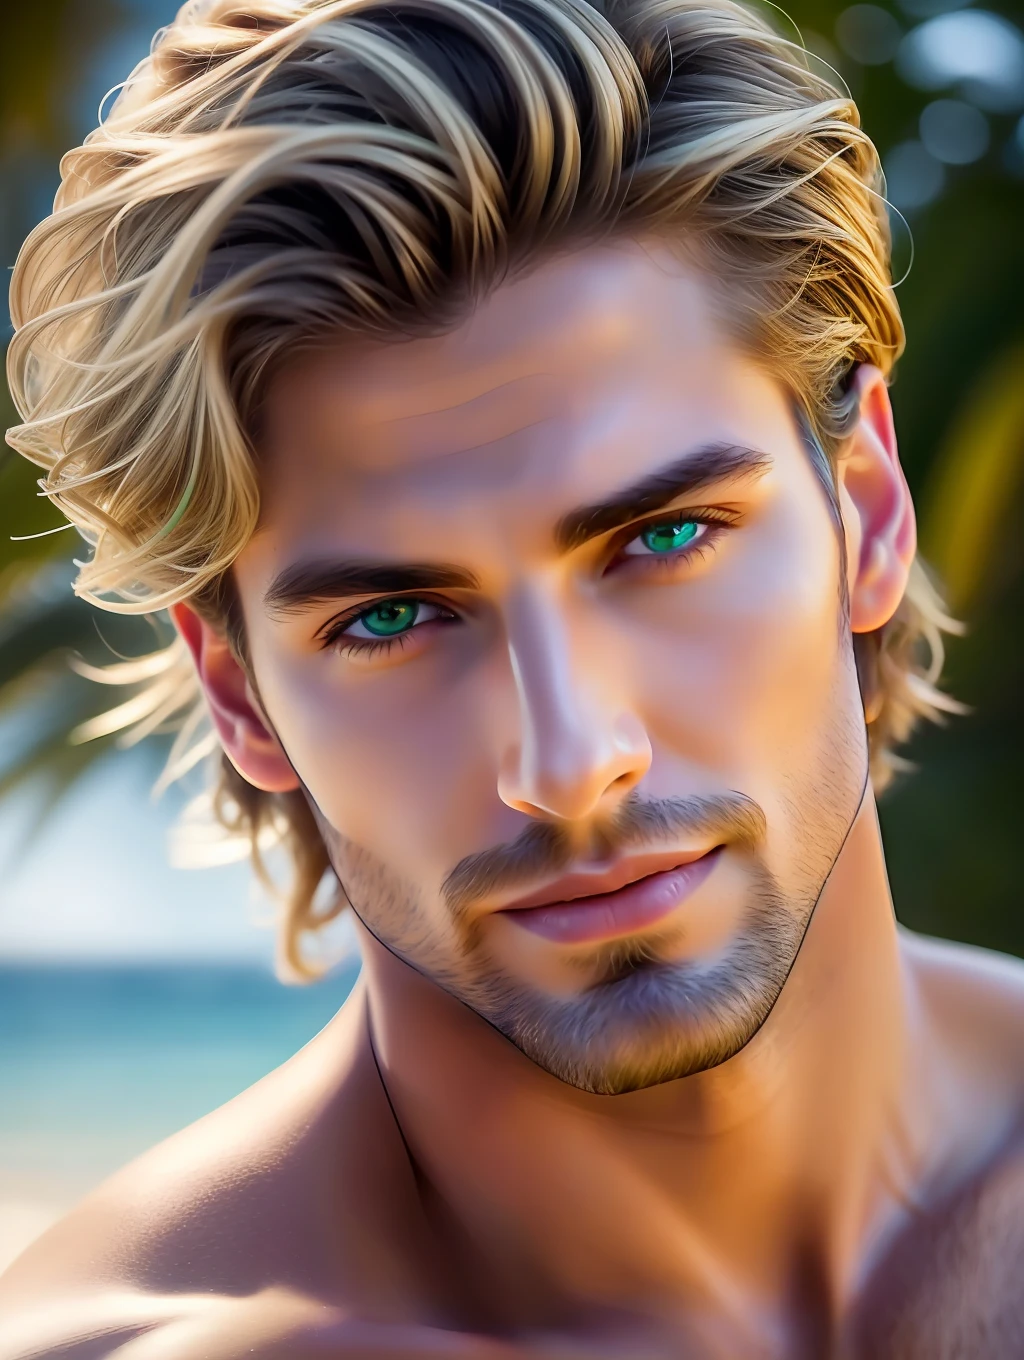 Кинематографическое мягкое освещение освещает потрясающе детализированную и ультрареалистичную красивую греческую супермодель мужского пола., пляжный образ, короткие, растрепанные, ветреные темно-русые волосы, ясные зеленые глаза, очаровательная идеальная улыбка, чувственный, горячий мужчина, красивый, это в тренде на ArtStation. Octane — идеальный инструмент для передачи мельчайших деталей этого шедевра фотографии в формате 16K..